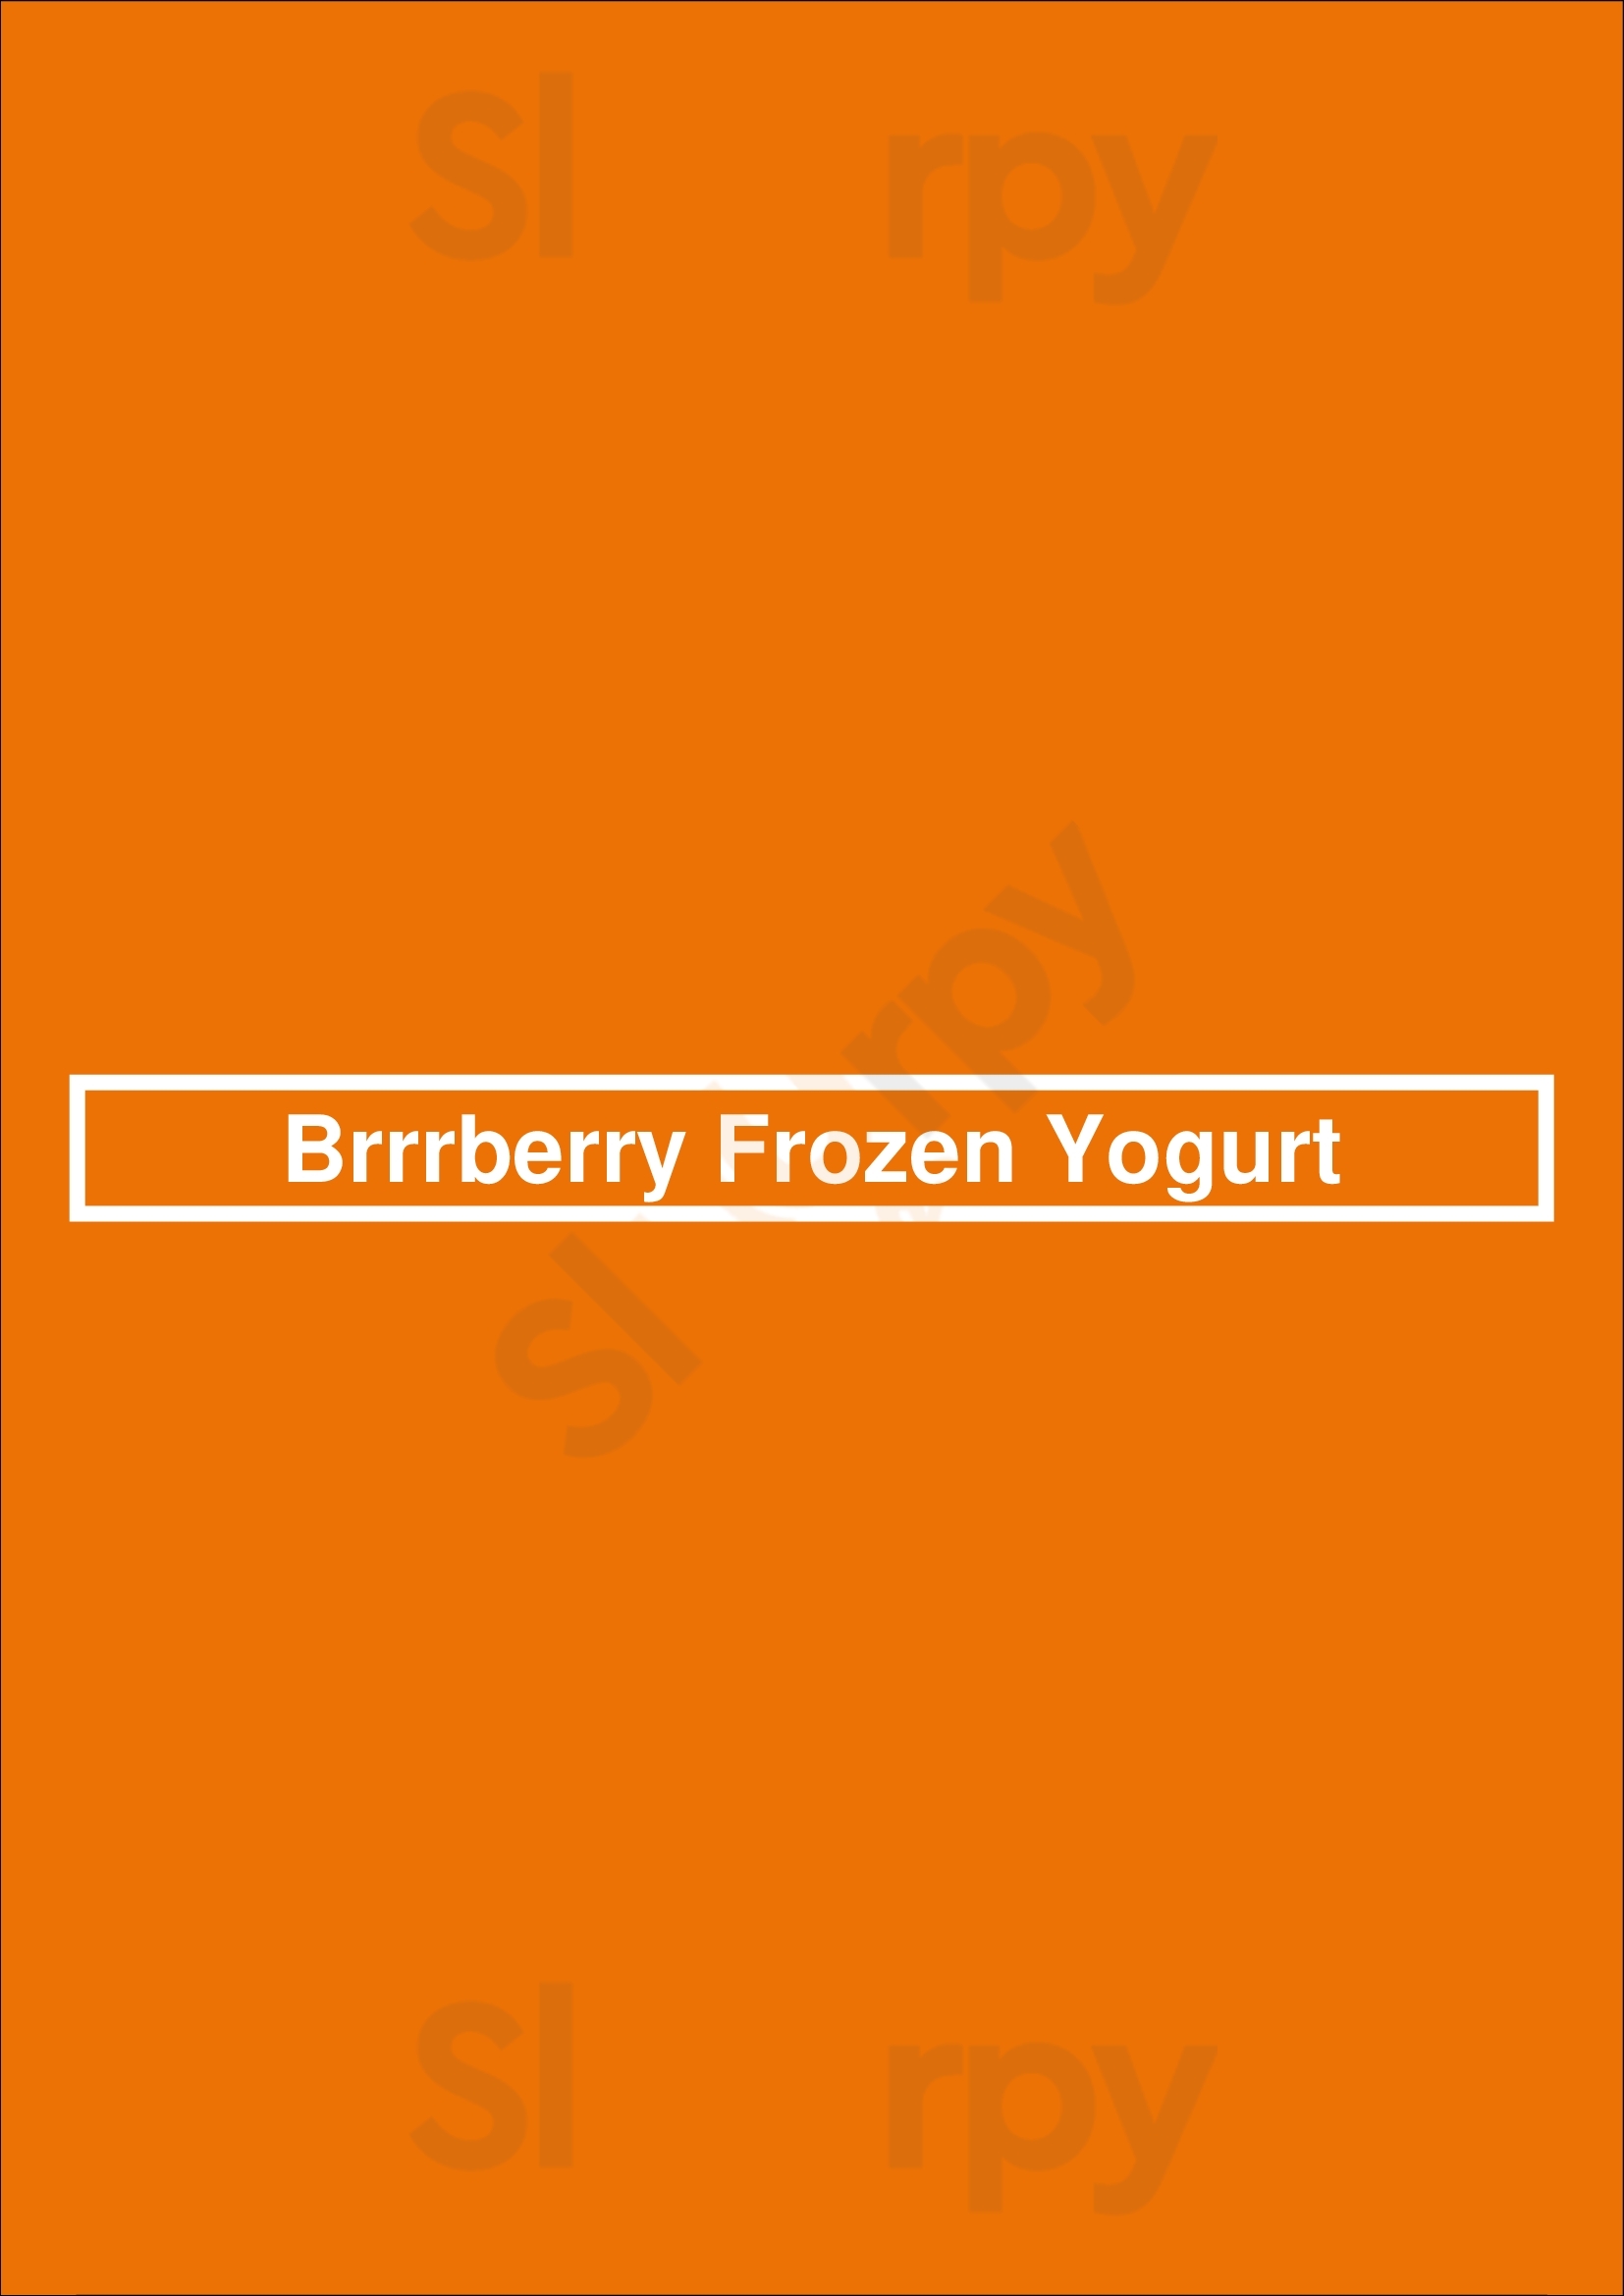 Brrrberry Frozen Yogurt Wilmington Menu - 1